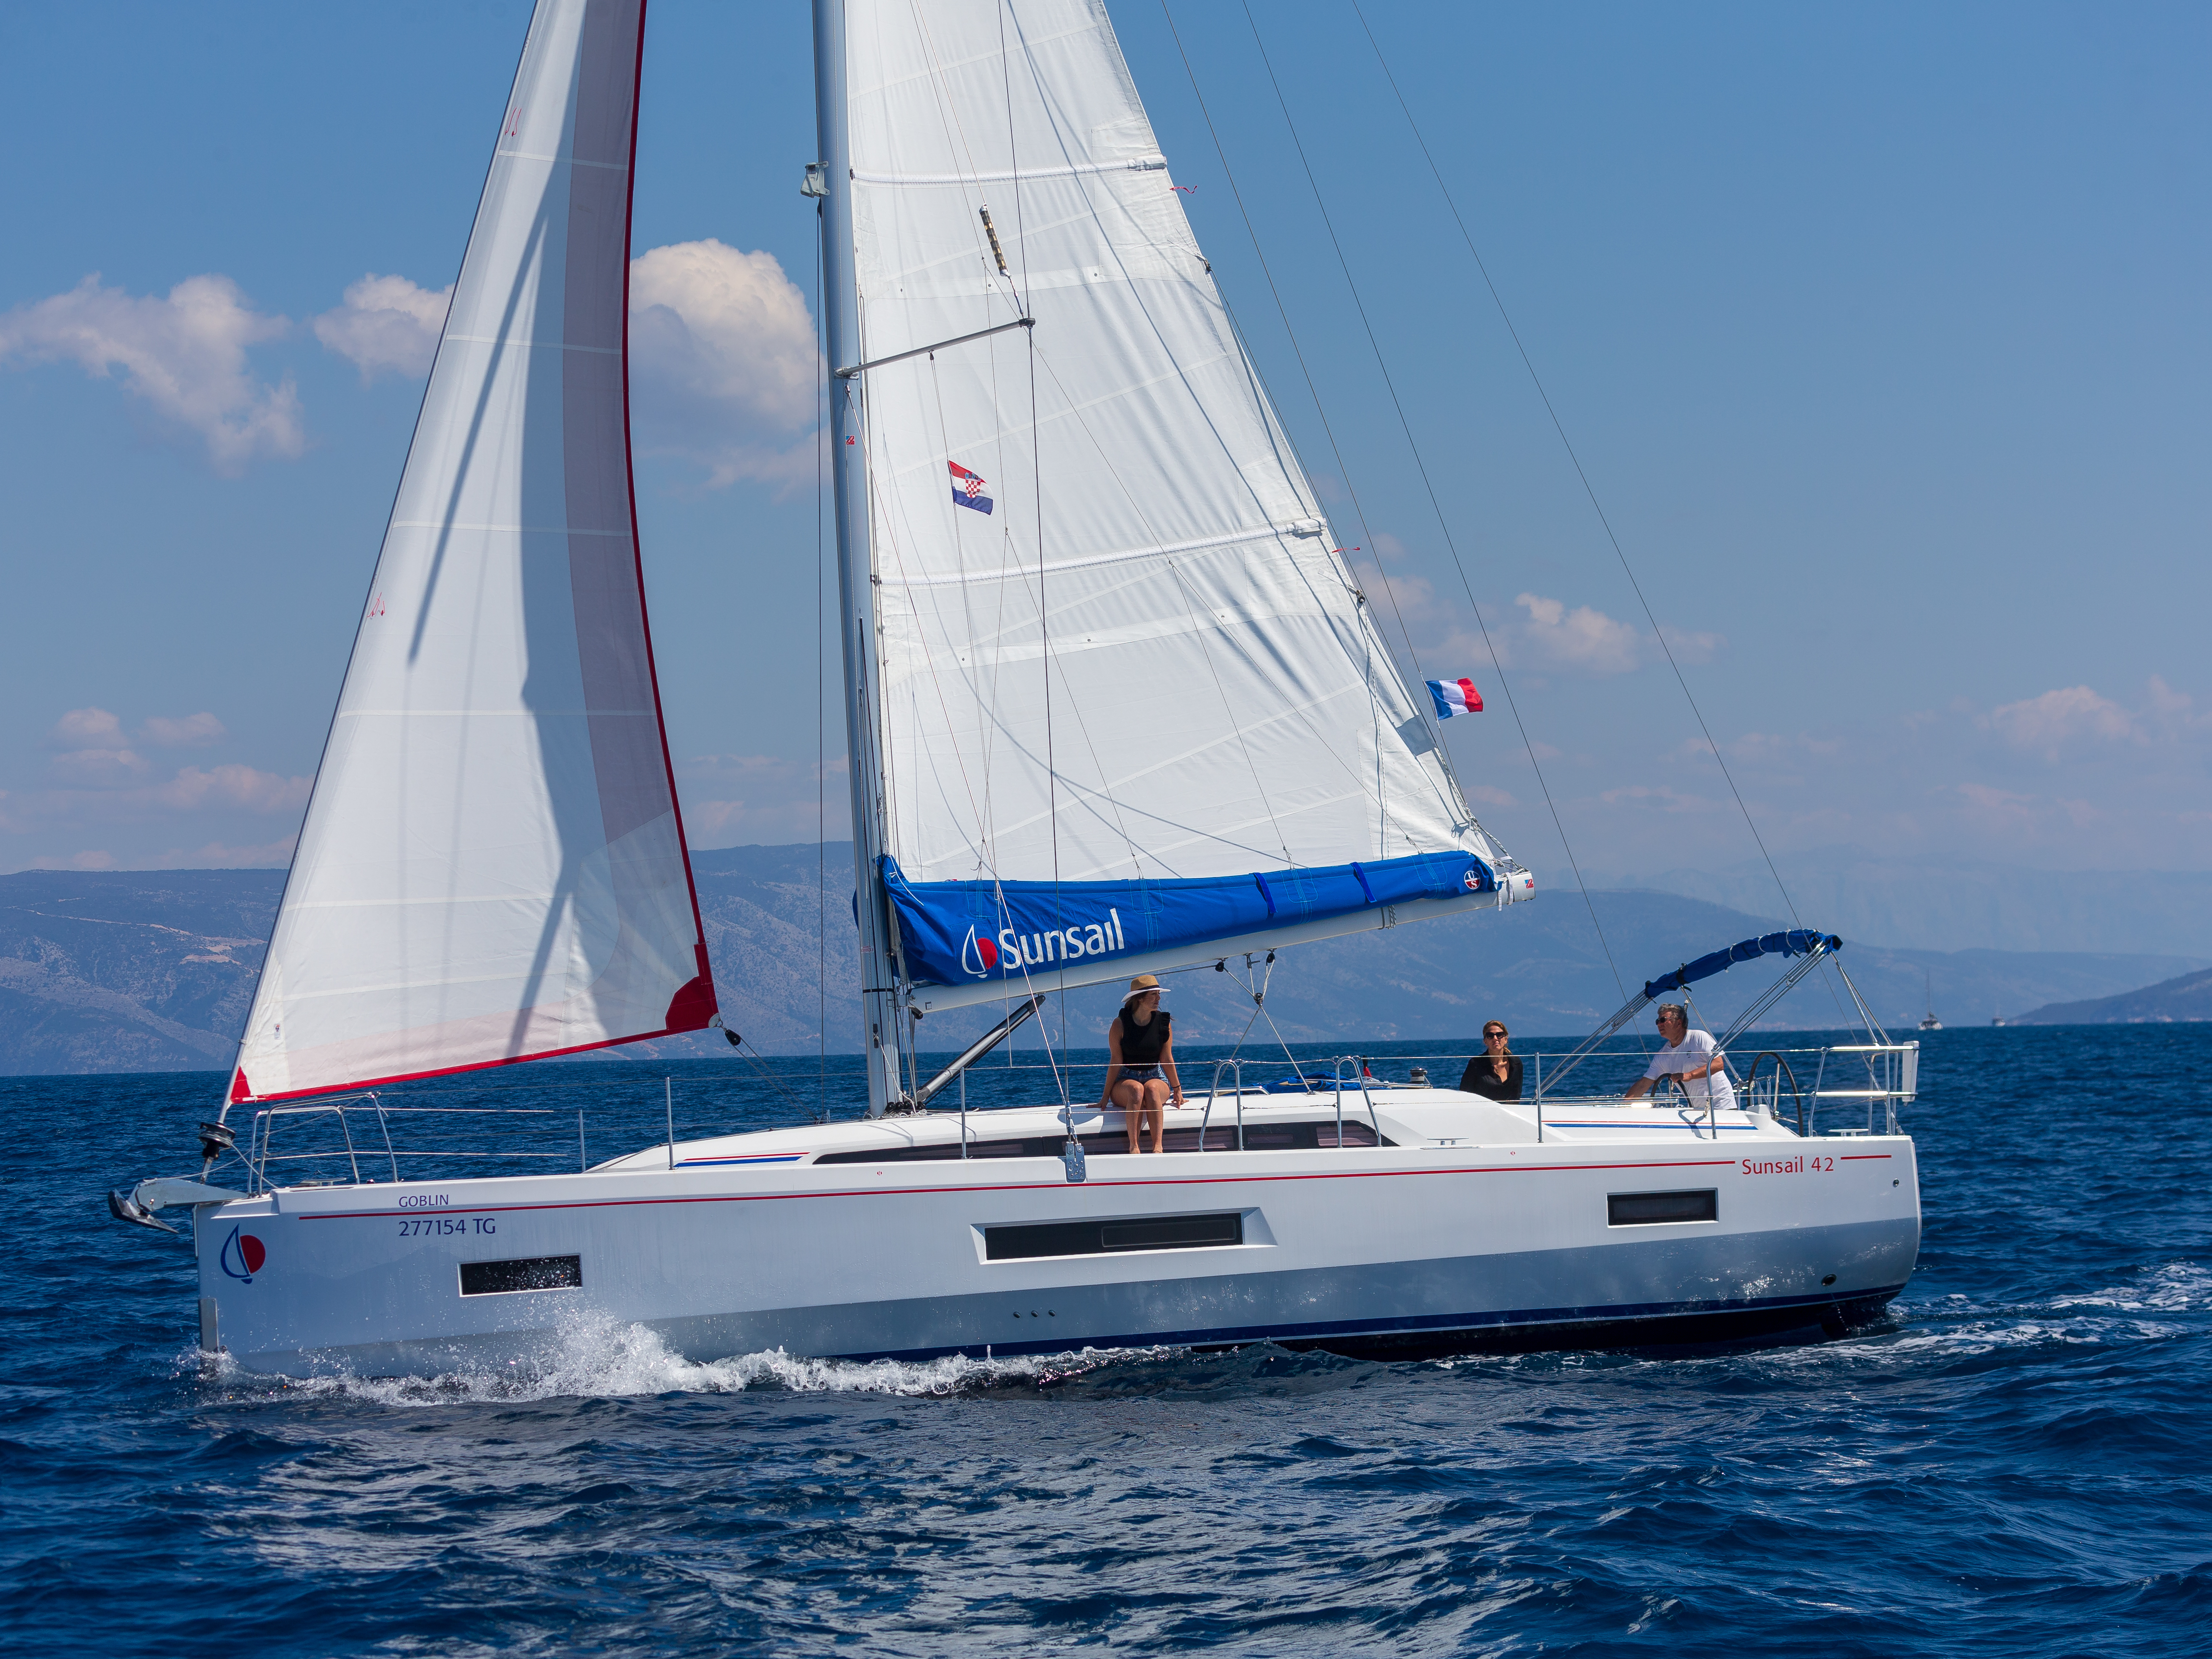 Yacht charter Sunsail 42 - Croatia, Central Dalmatia, Marina